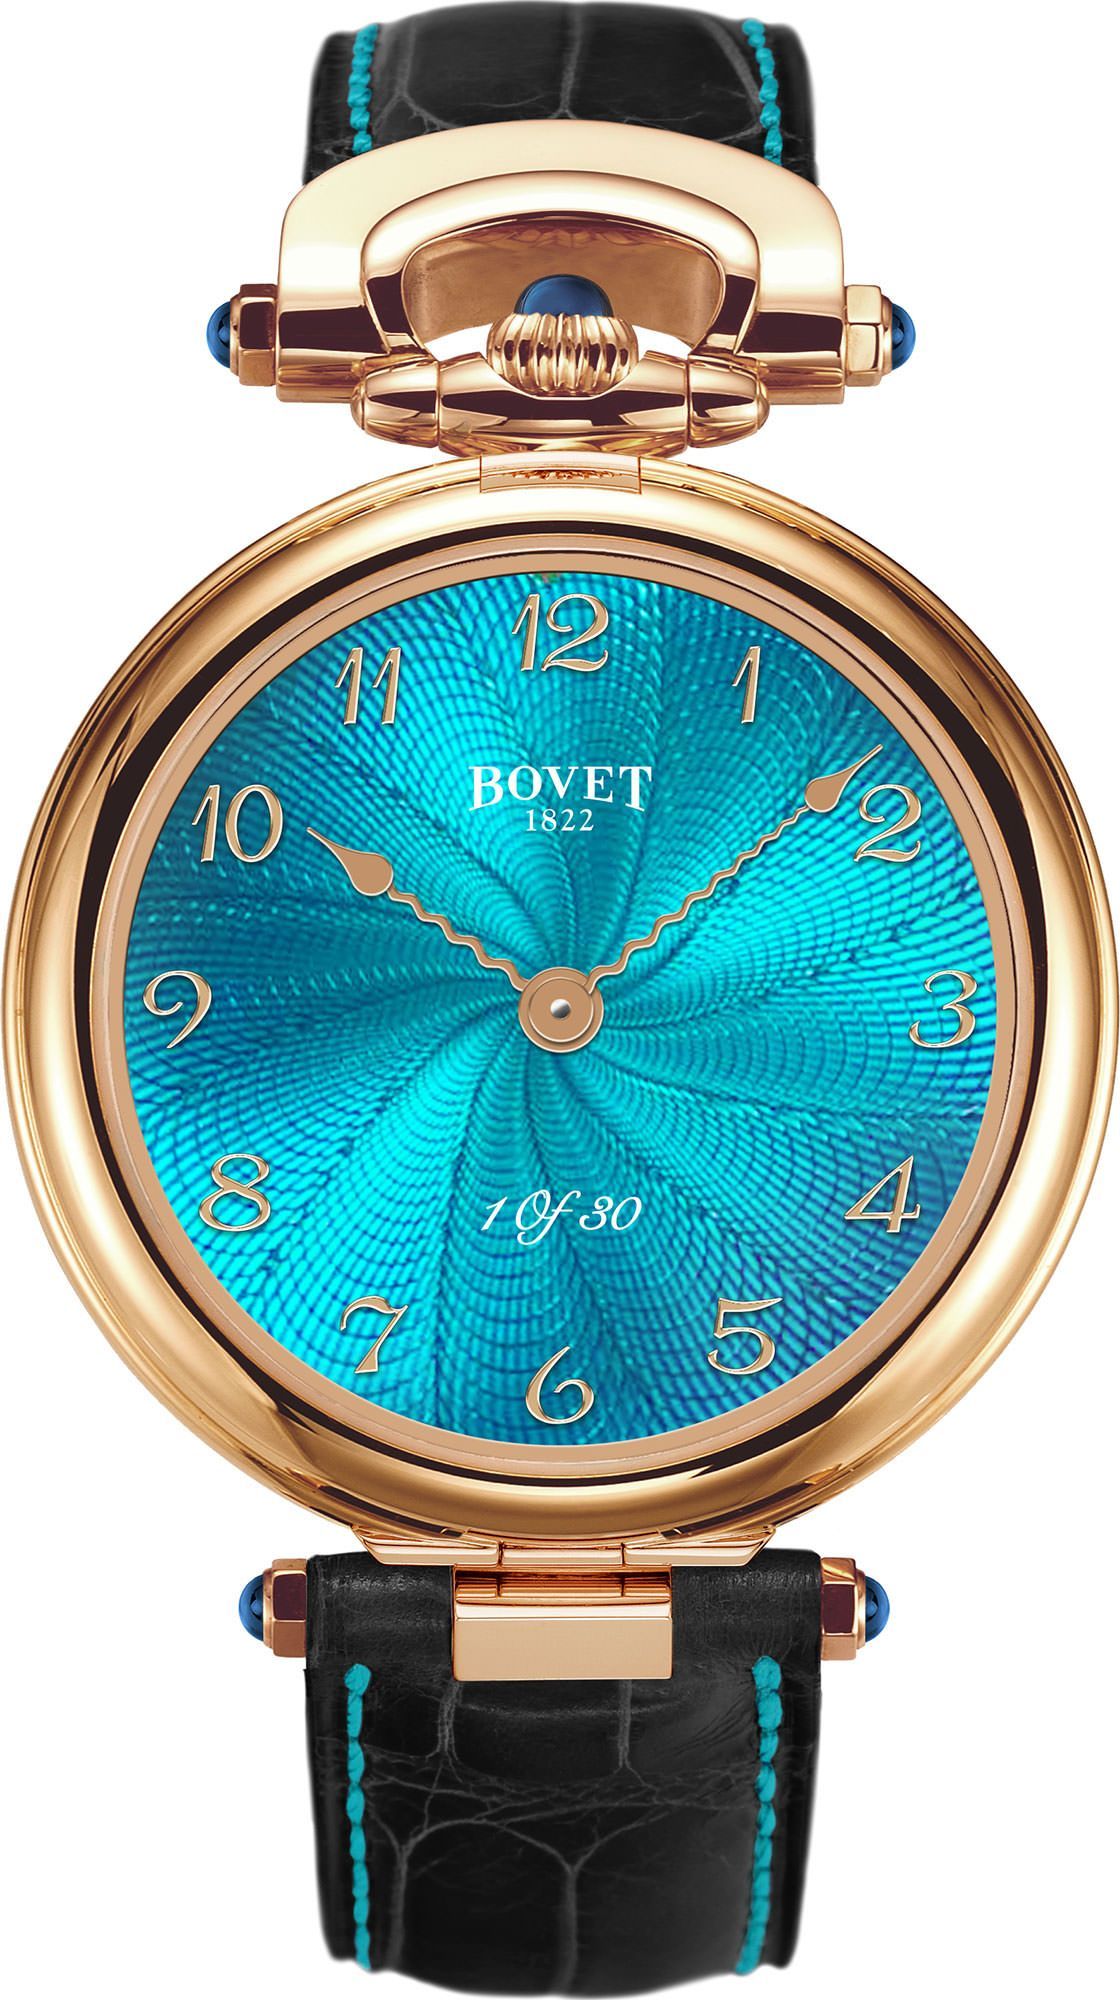 Bovet Monsieur Bovet 43 mm Watch in Turquoise Dial For Men - 1